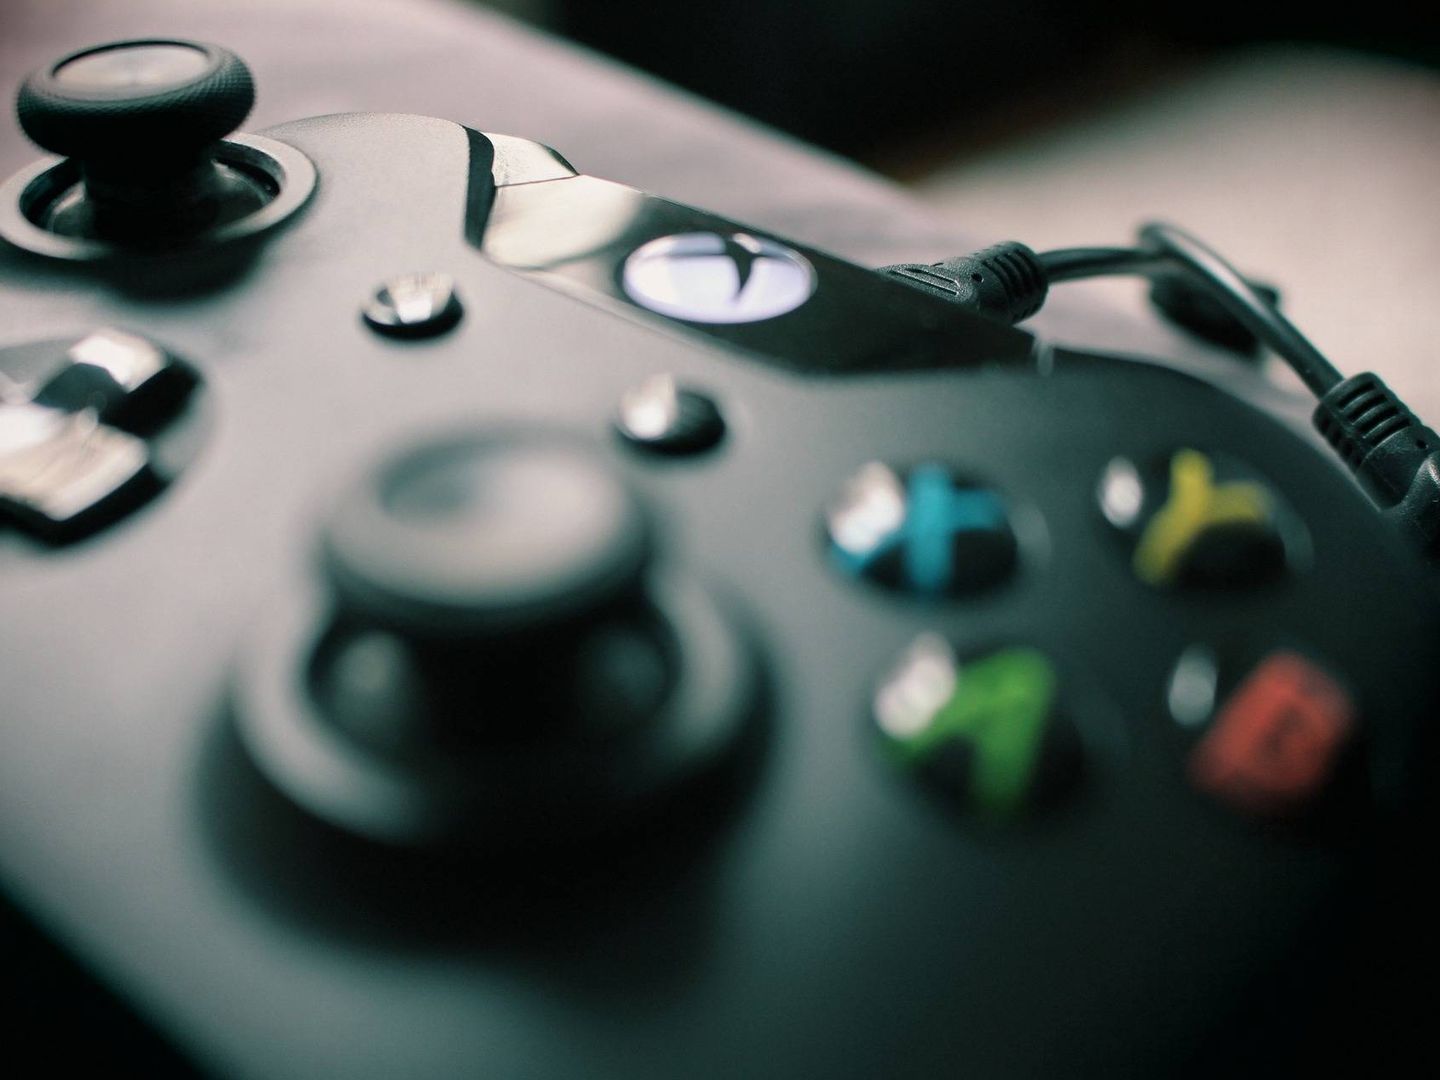 Mando de la Xbox, con el botón ídem en la parte central. (Imagen: Pixabay)